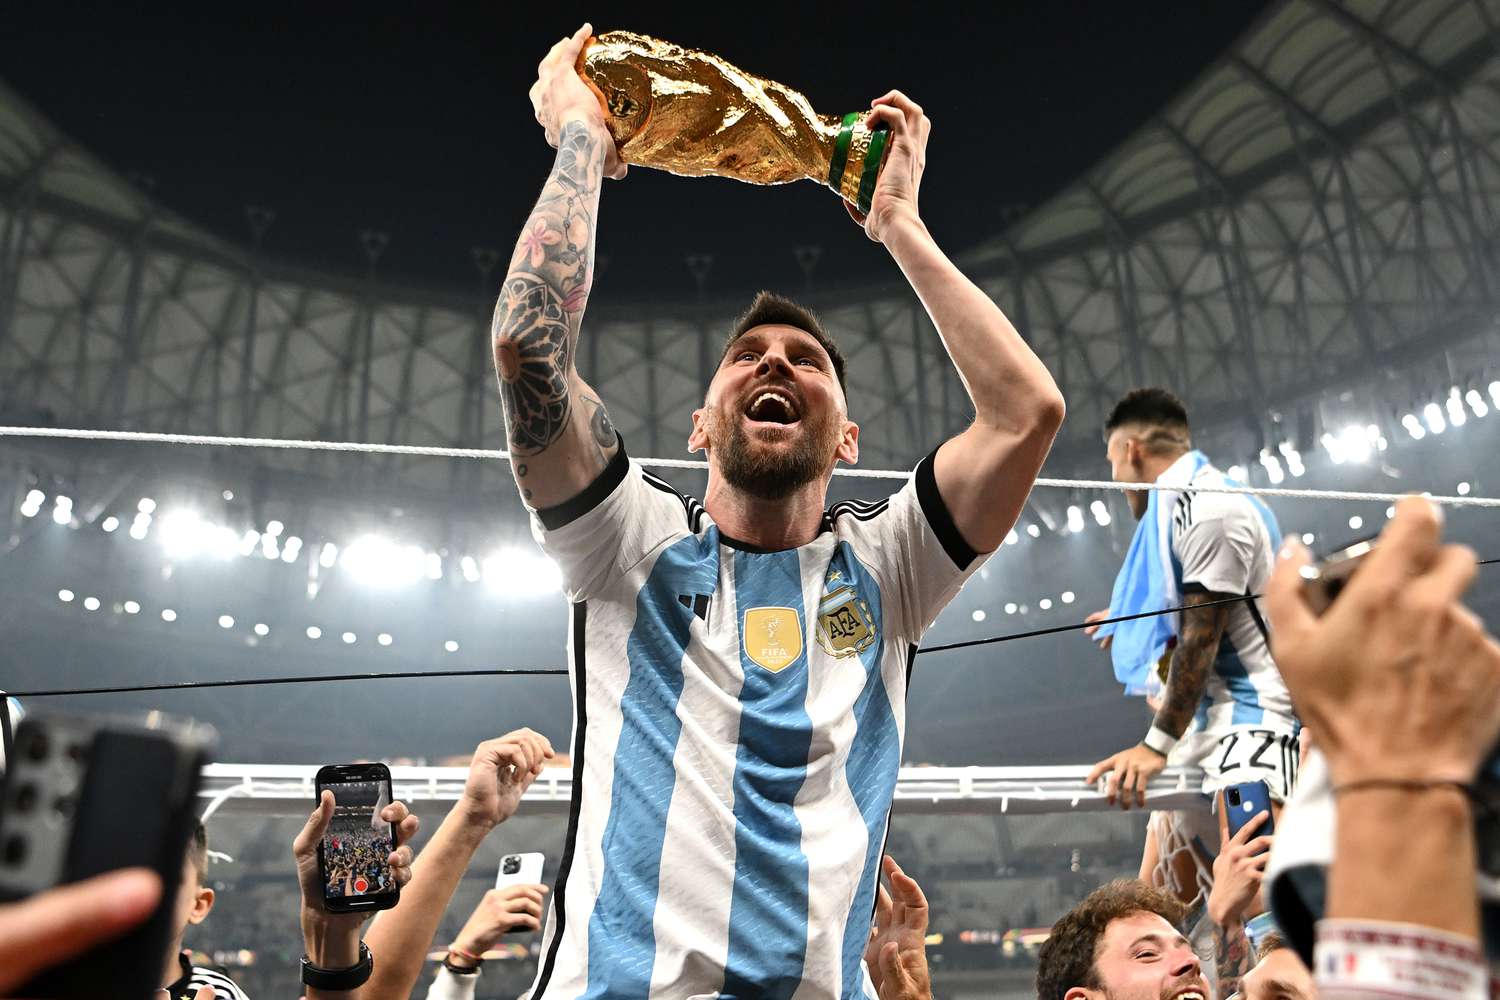 La somme hallucinante touchée par Messi grâce à Instagram après la victoire au Mondial